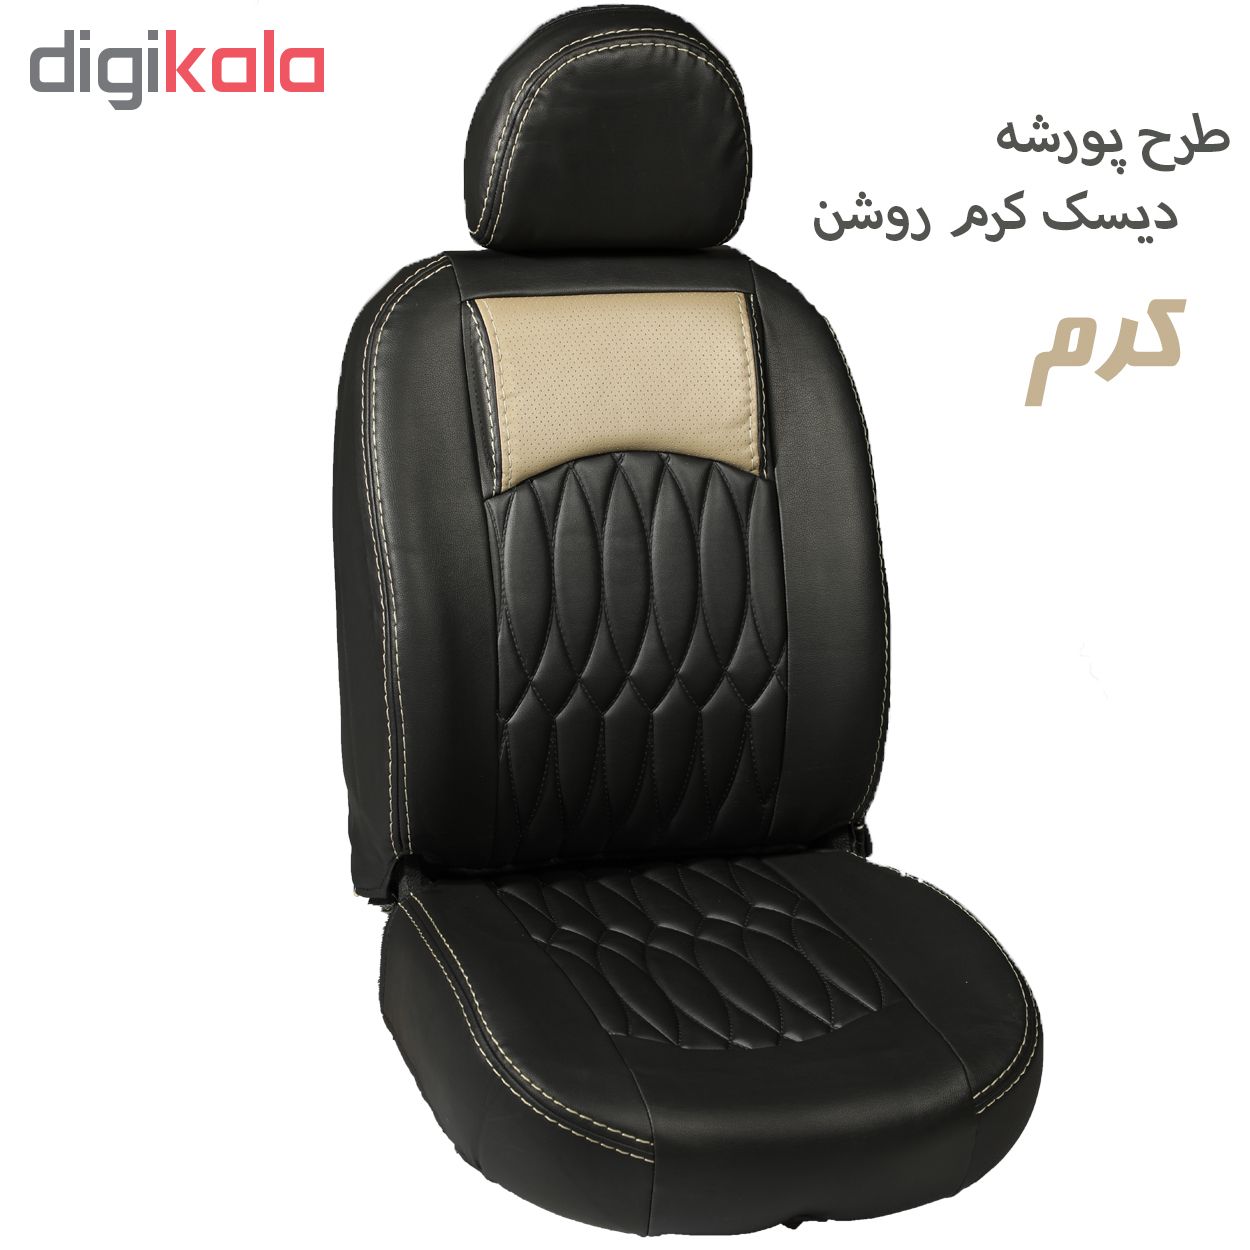 روکش صندلی خودرو جلوه مدل pr14 مناسب برای تیبا 2